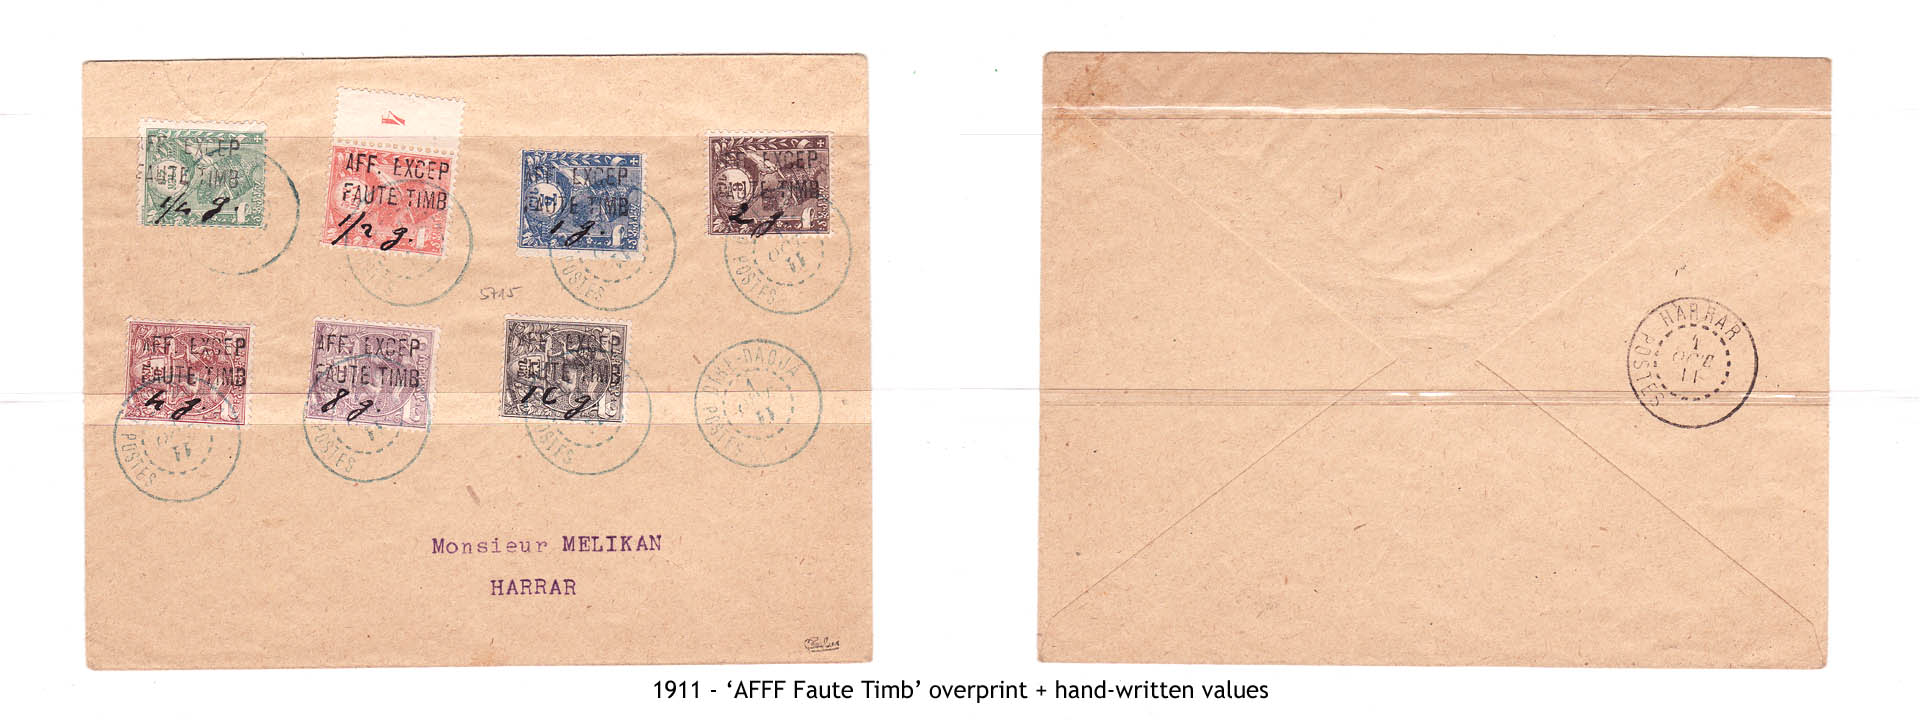 1911 - “AFFF Faute Timb” overprint + hand-written values